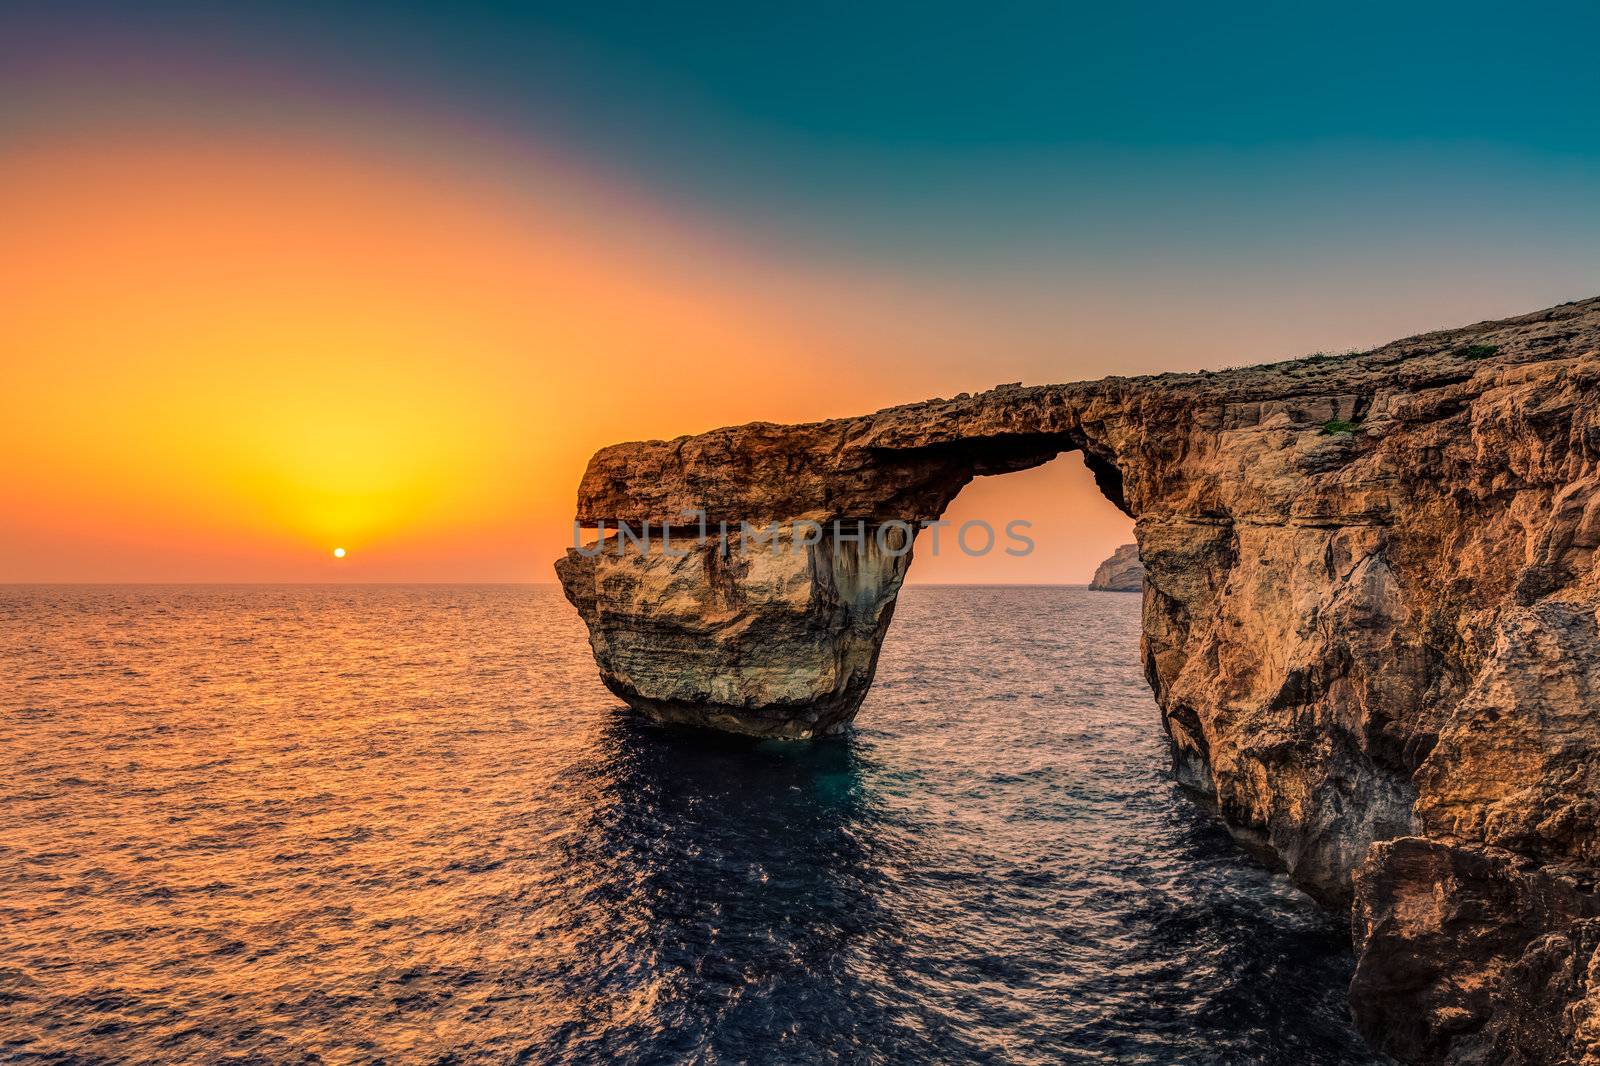 The Azure Window in Malta at Sunset